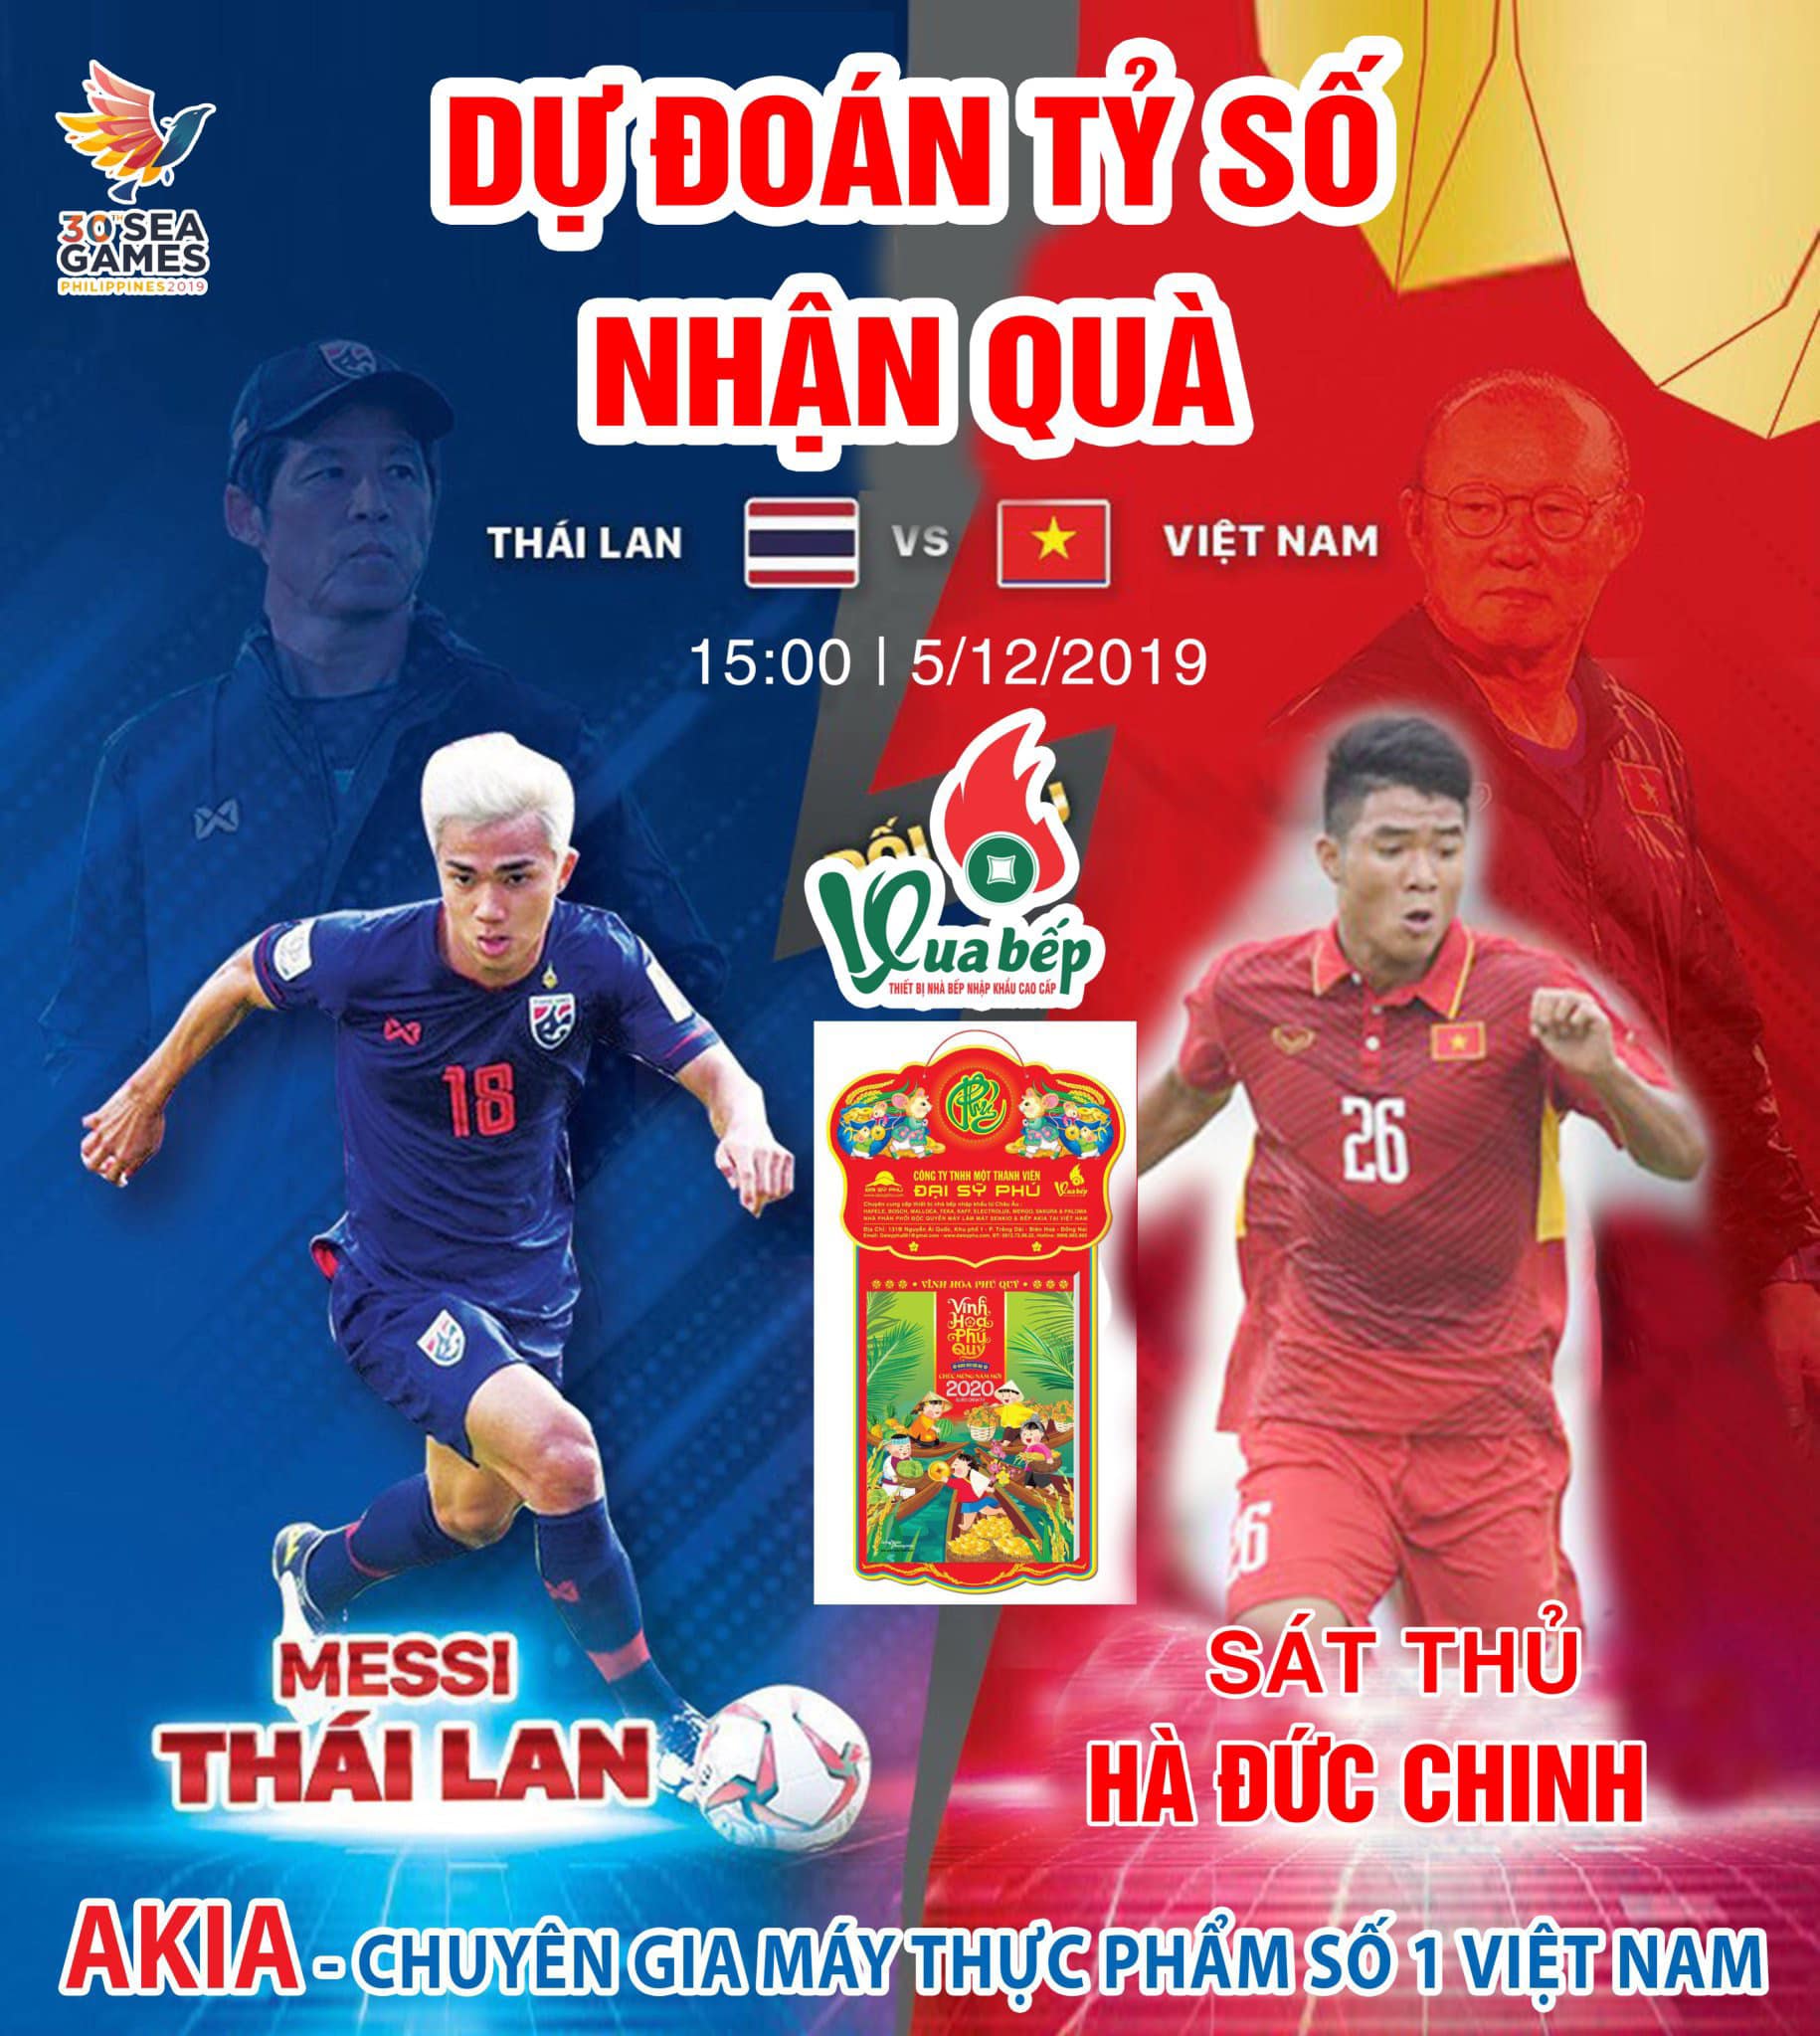 Dự đoán tỷ số bóng đá Việt Nam - Thái Lan vòng loai Seagame 30